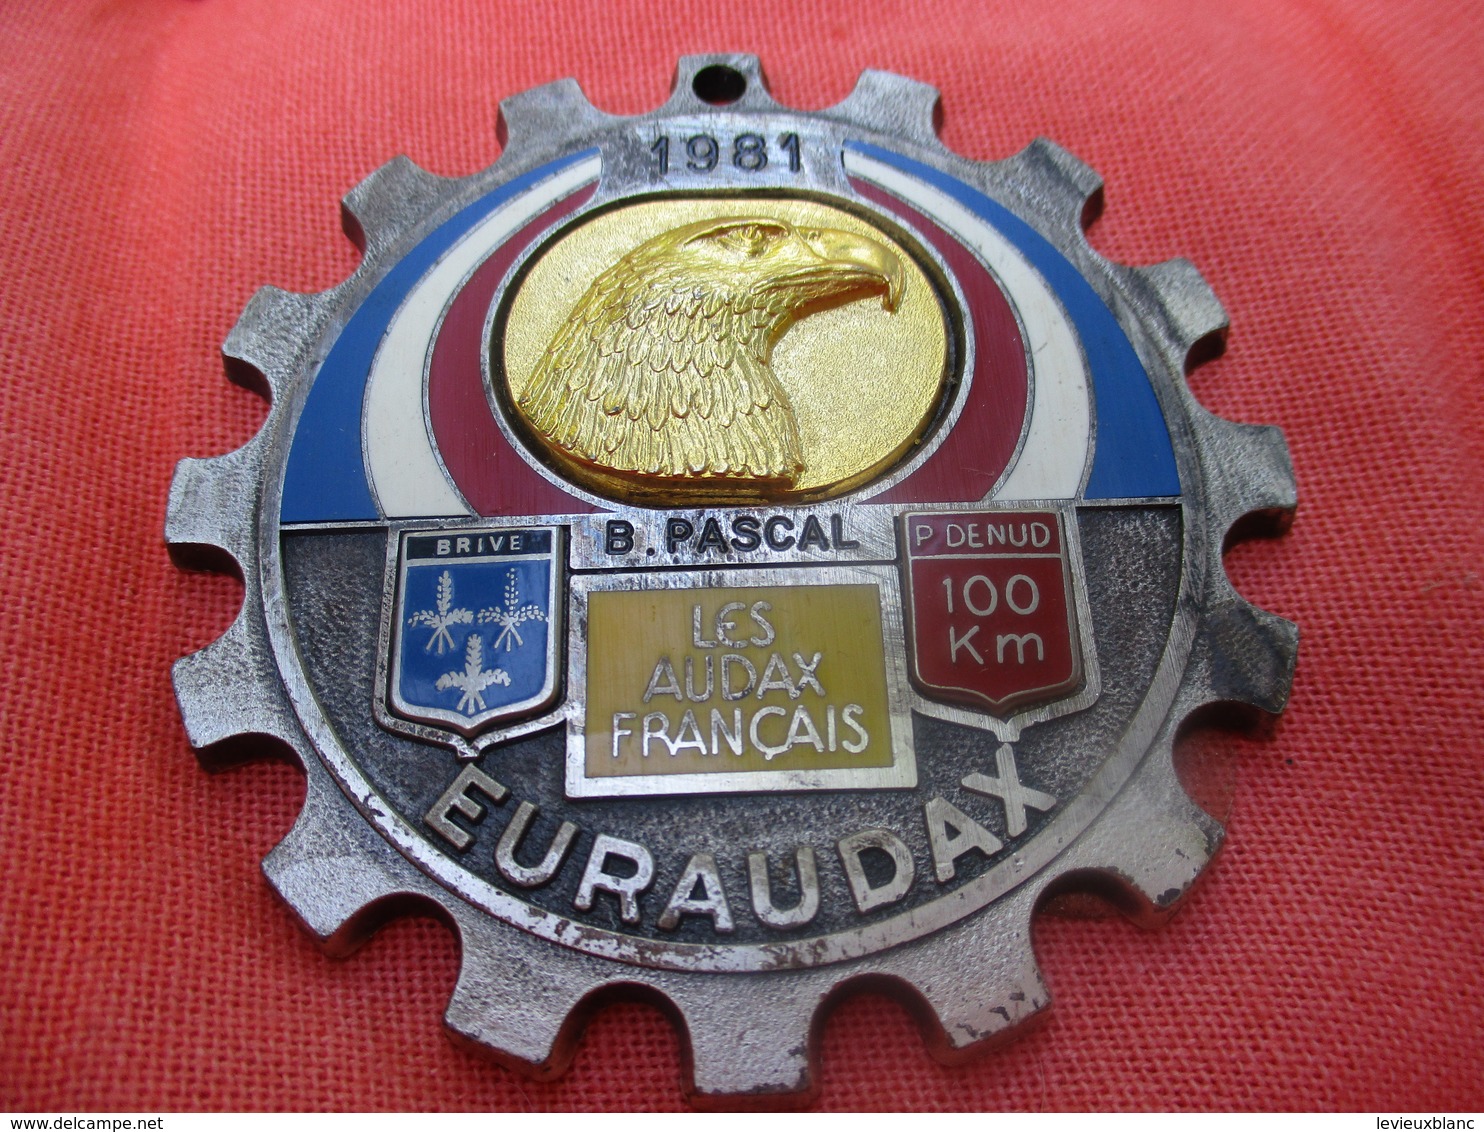 Médaille De Sport/Cyclisme/ EURAUDAX/100 KM P Denud/ Tête D'Aigle/ BRIVE/Les Audax Français/1981    SPO290 - Wielrennen